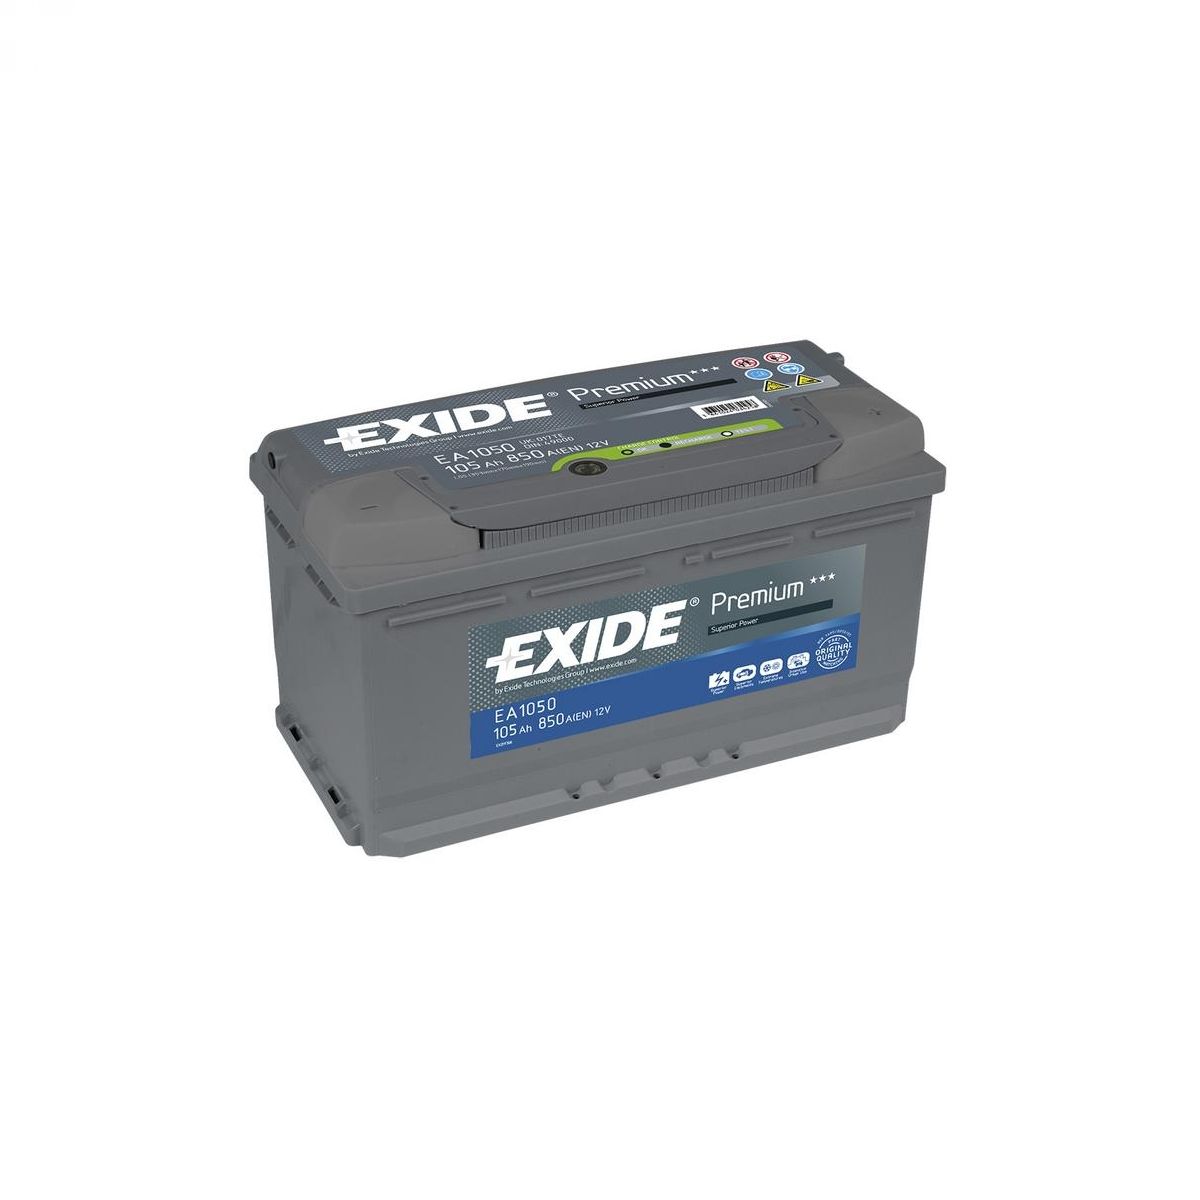 Akumulator EXIDE EA1050 Premium 105Ah